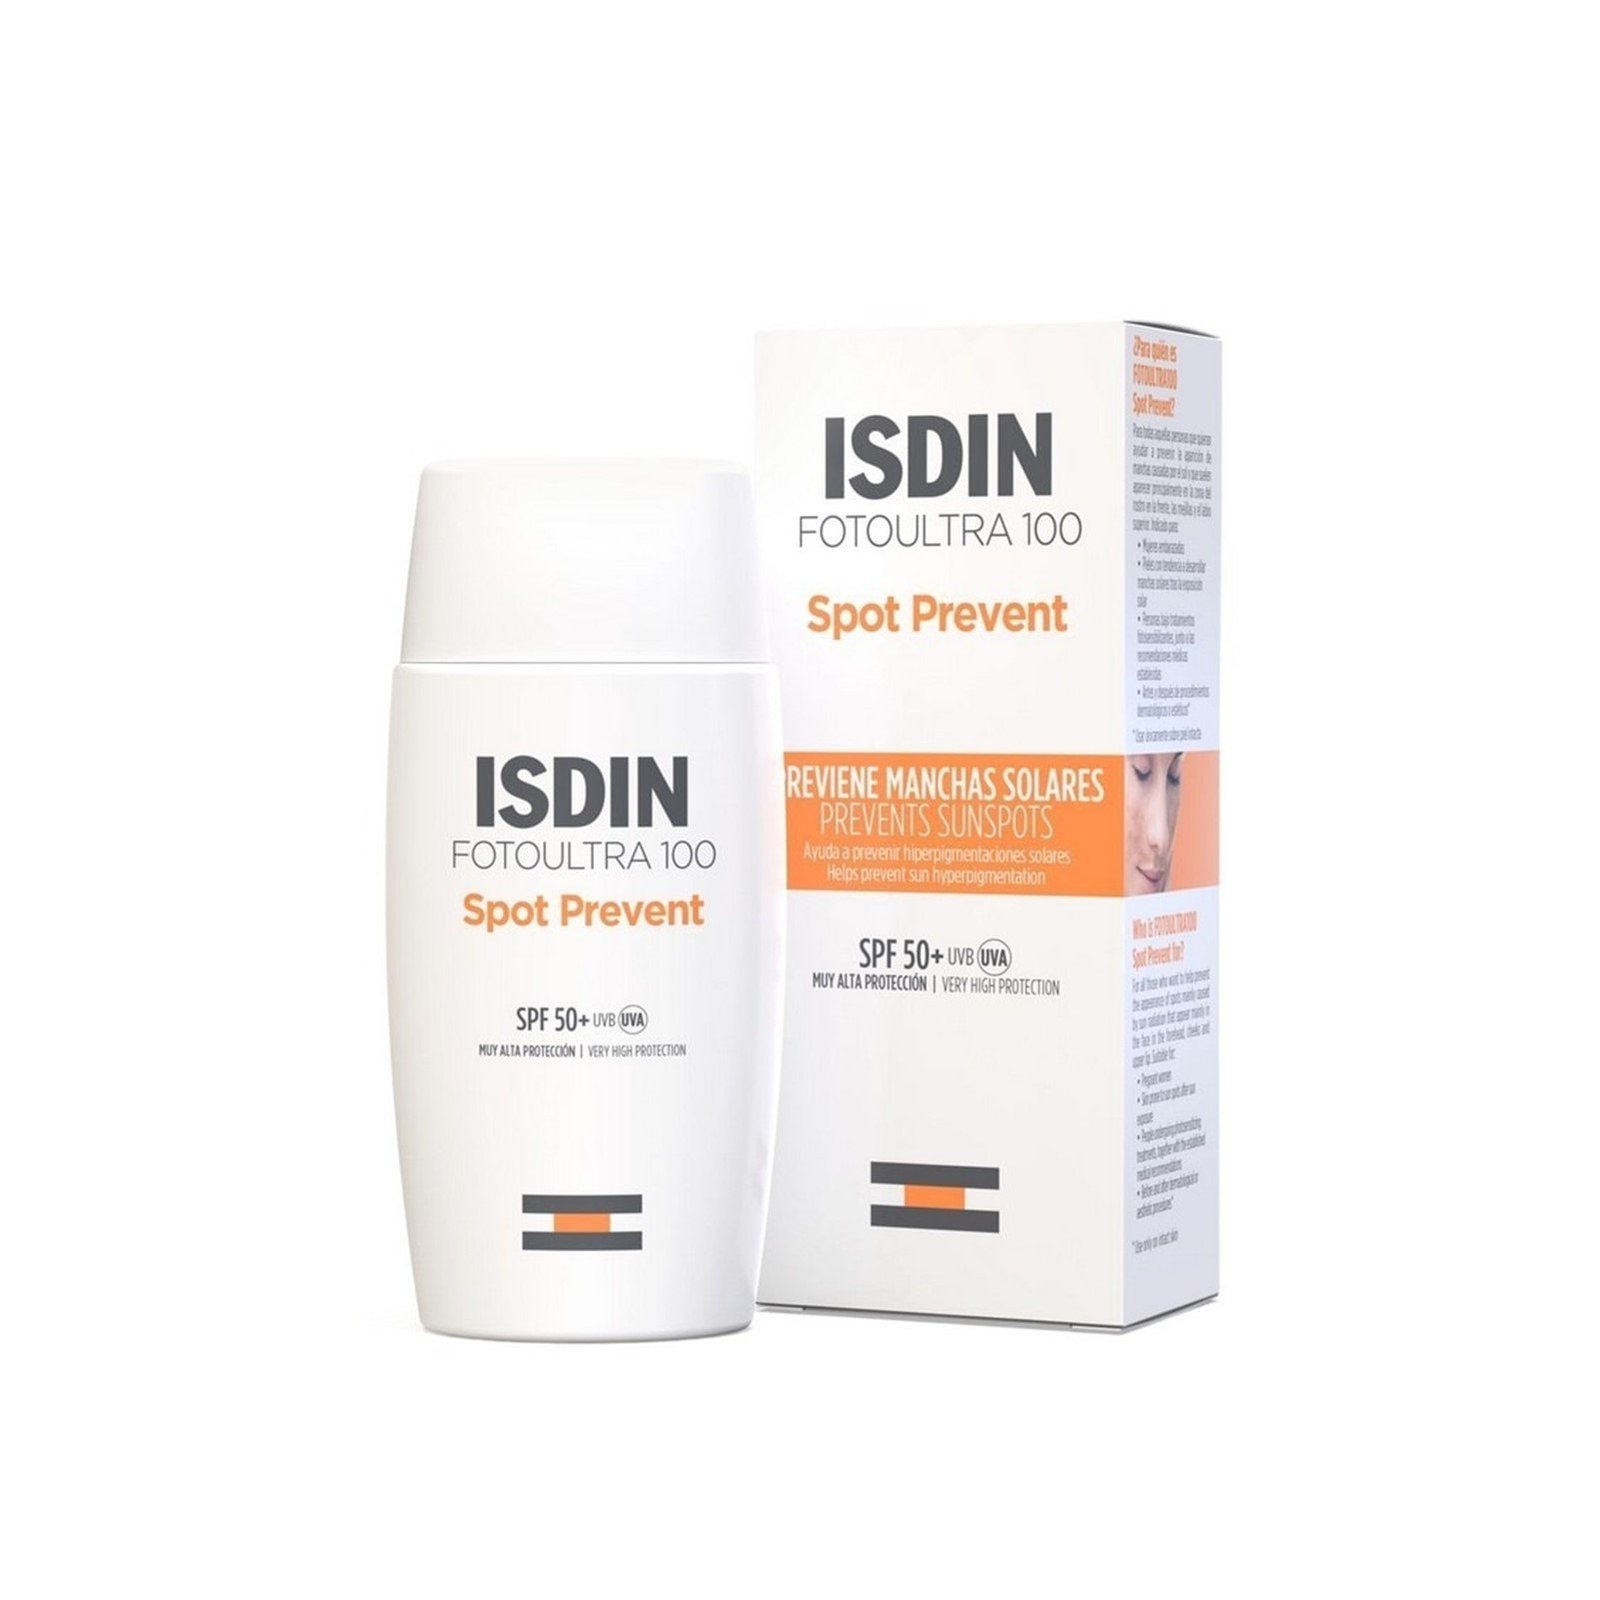 ISDIN FotoUltra 100 Spot Prevent Sunscreen SPF50+ 50ml